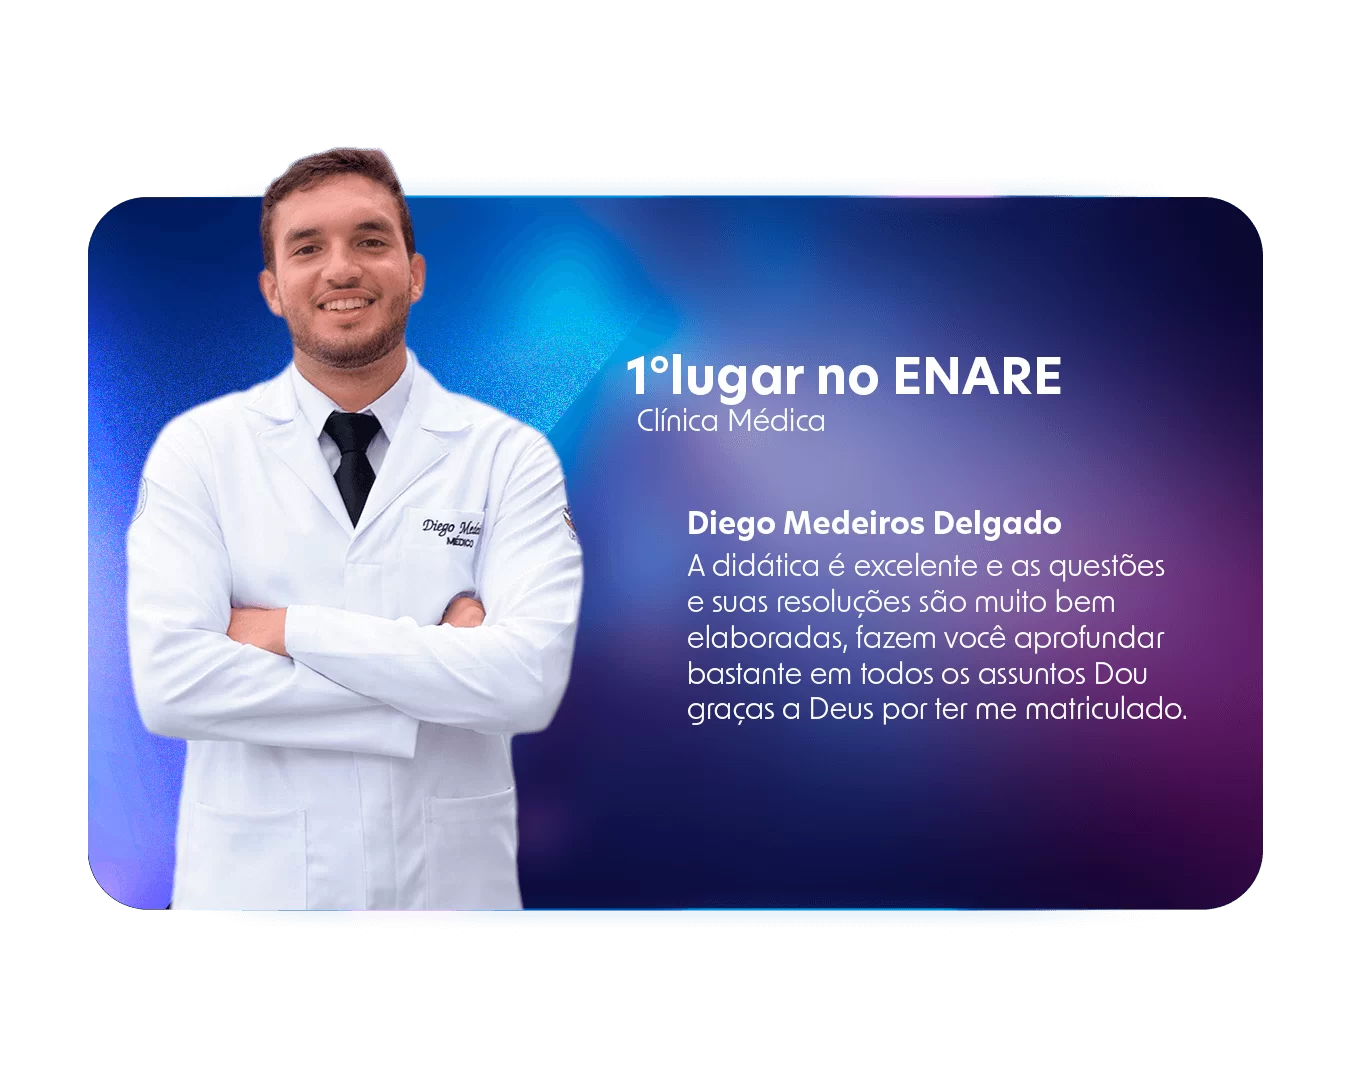 Diego-Medeiros-Delgado-Primeiro-Lugar-Clinica-Medica-ENARE